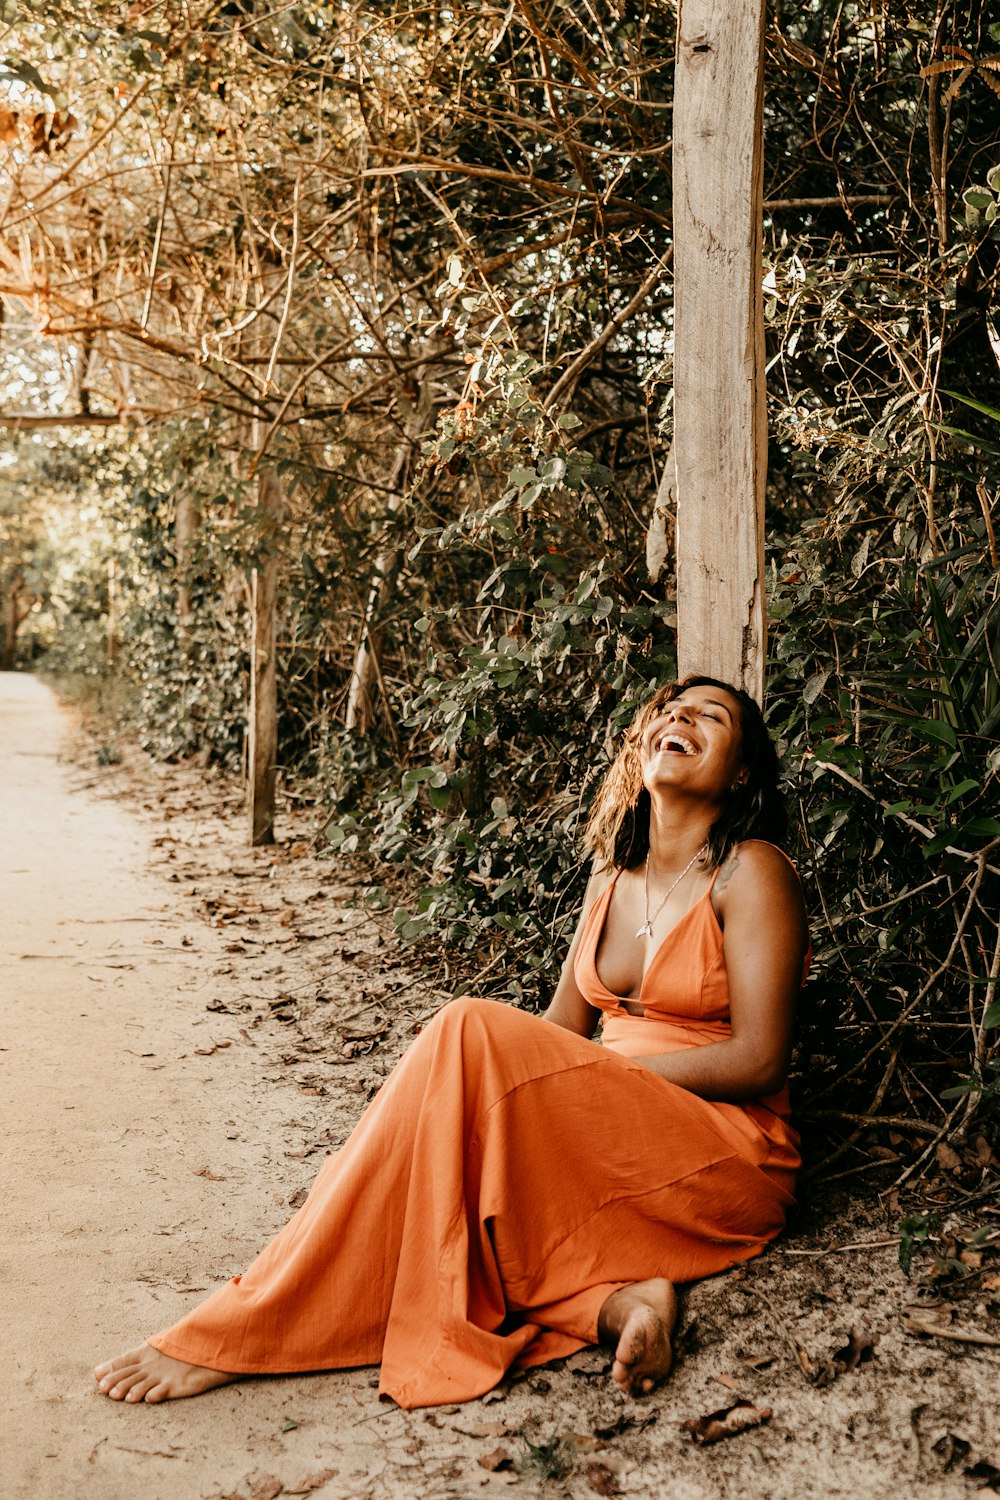 Mulher descalça vestindo vestido de alça de espaguete laranja rindo enquanto sentada no caminho cercado por árvores verdes